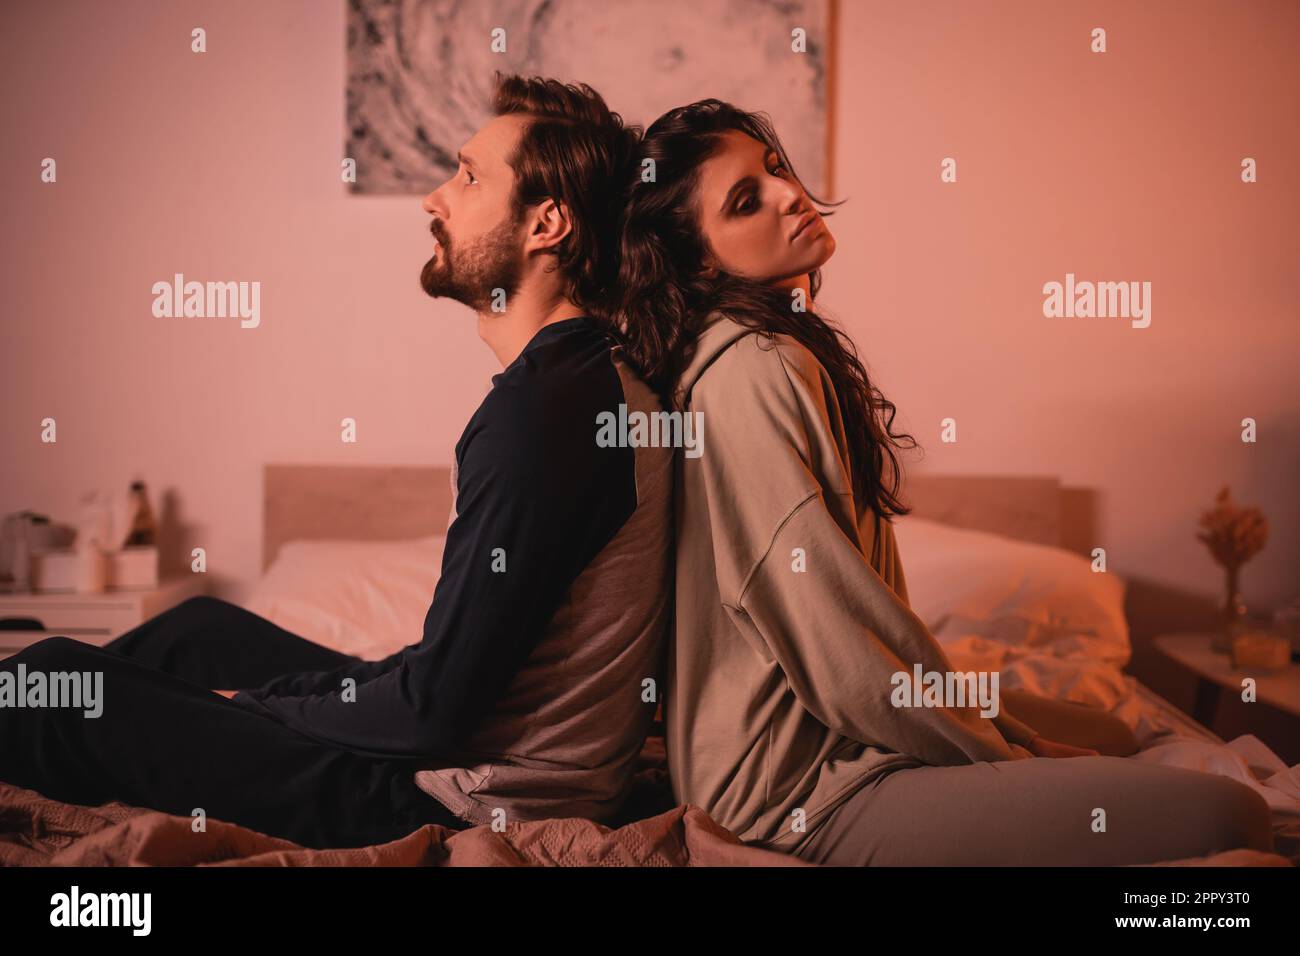 Un homme mécontent assis dos à dos avec une petite amie au lit le soir, image de stock Banque D'Images